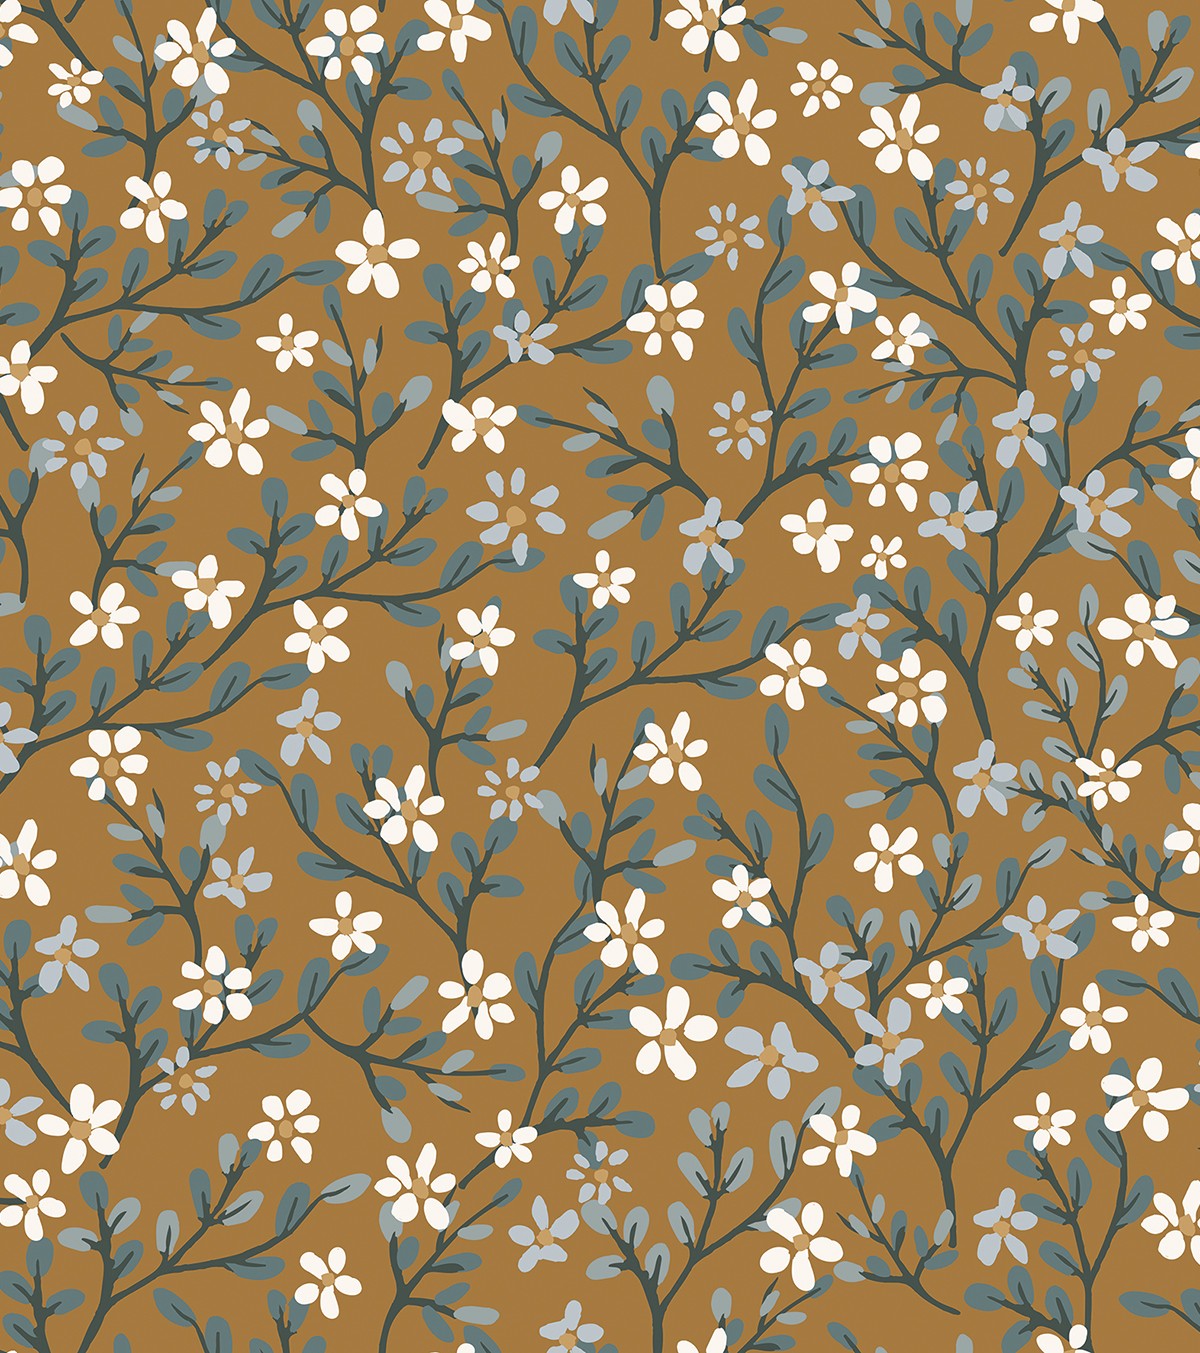 Braylynn - Children's Wallpaper - Flower Pattern